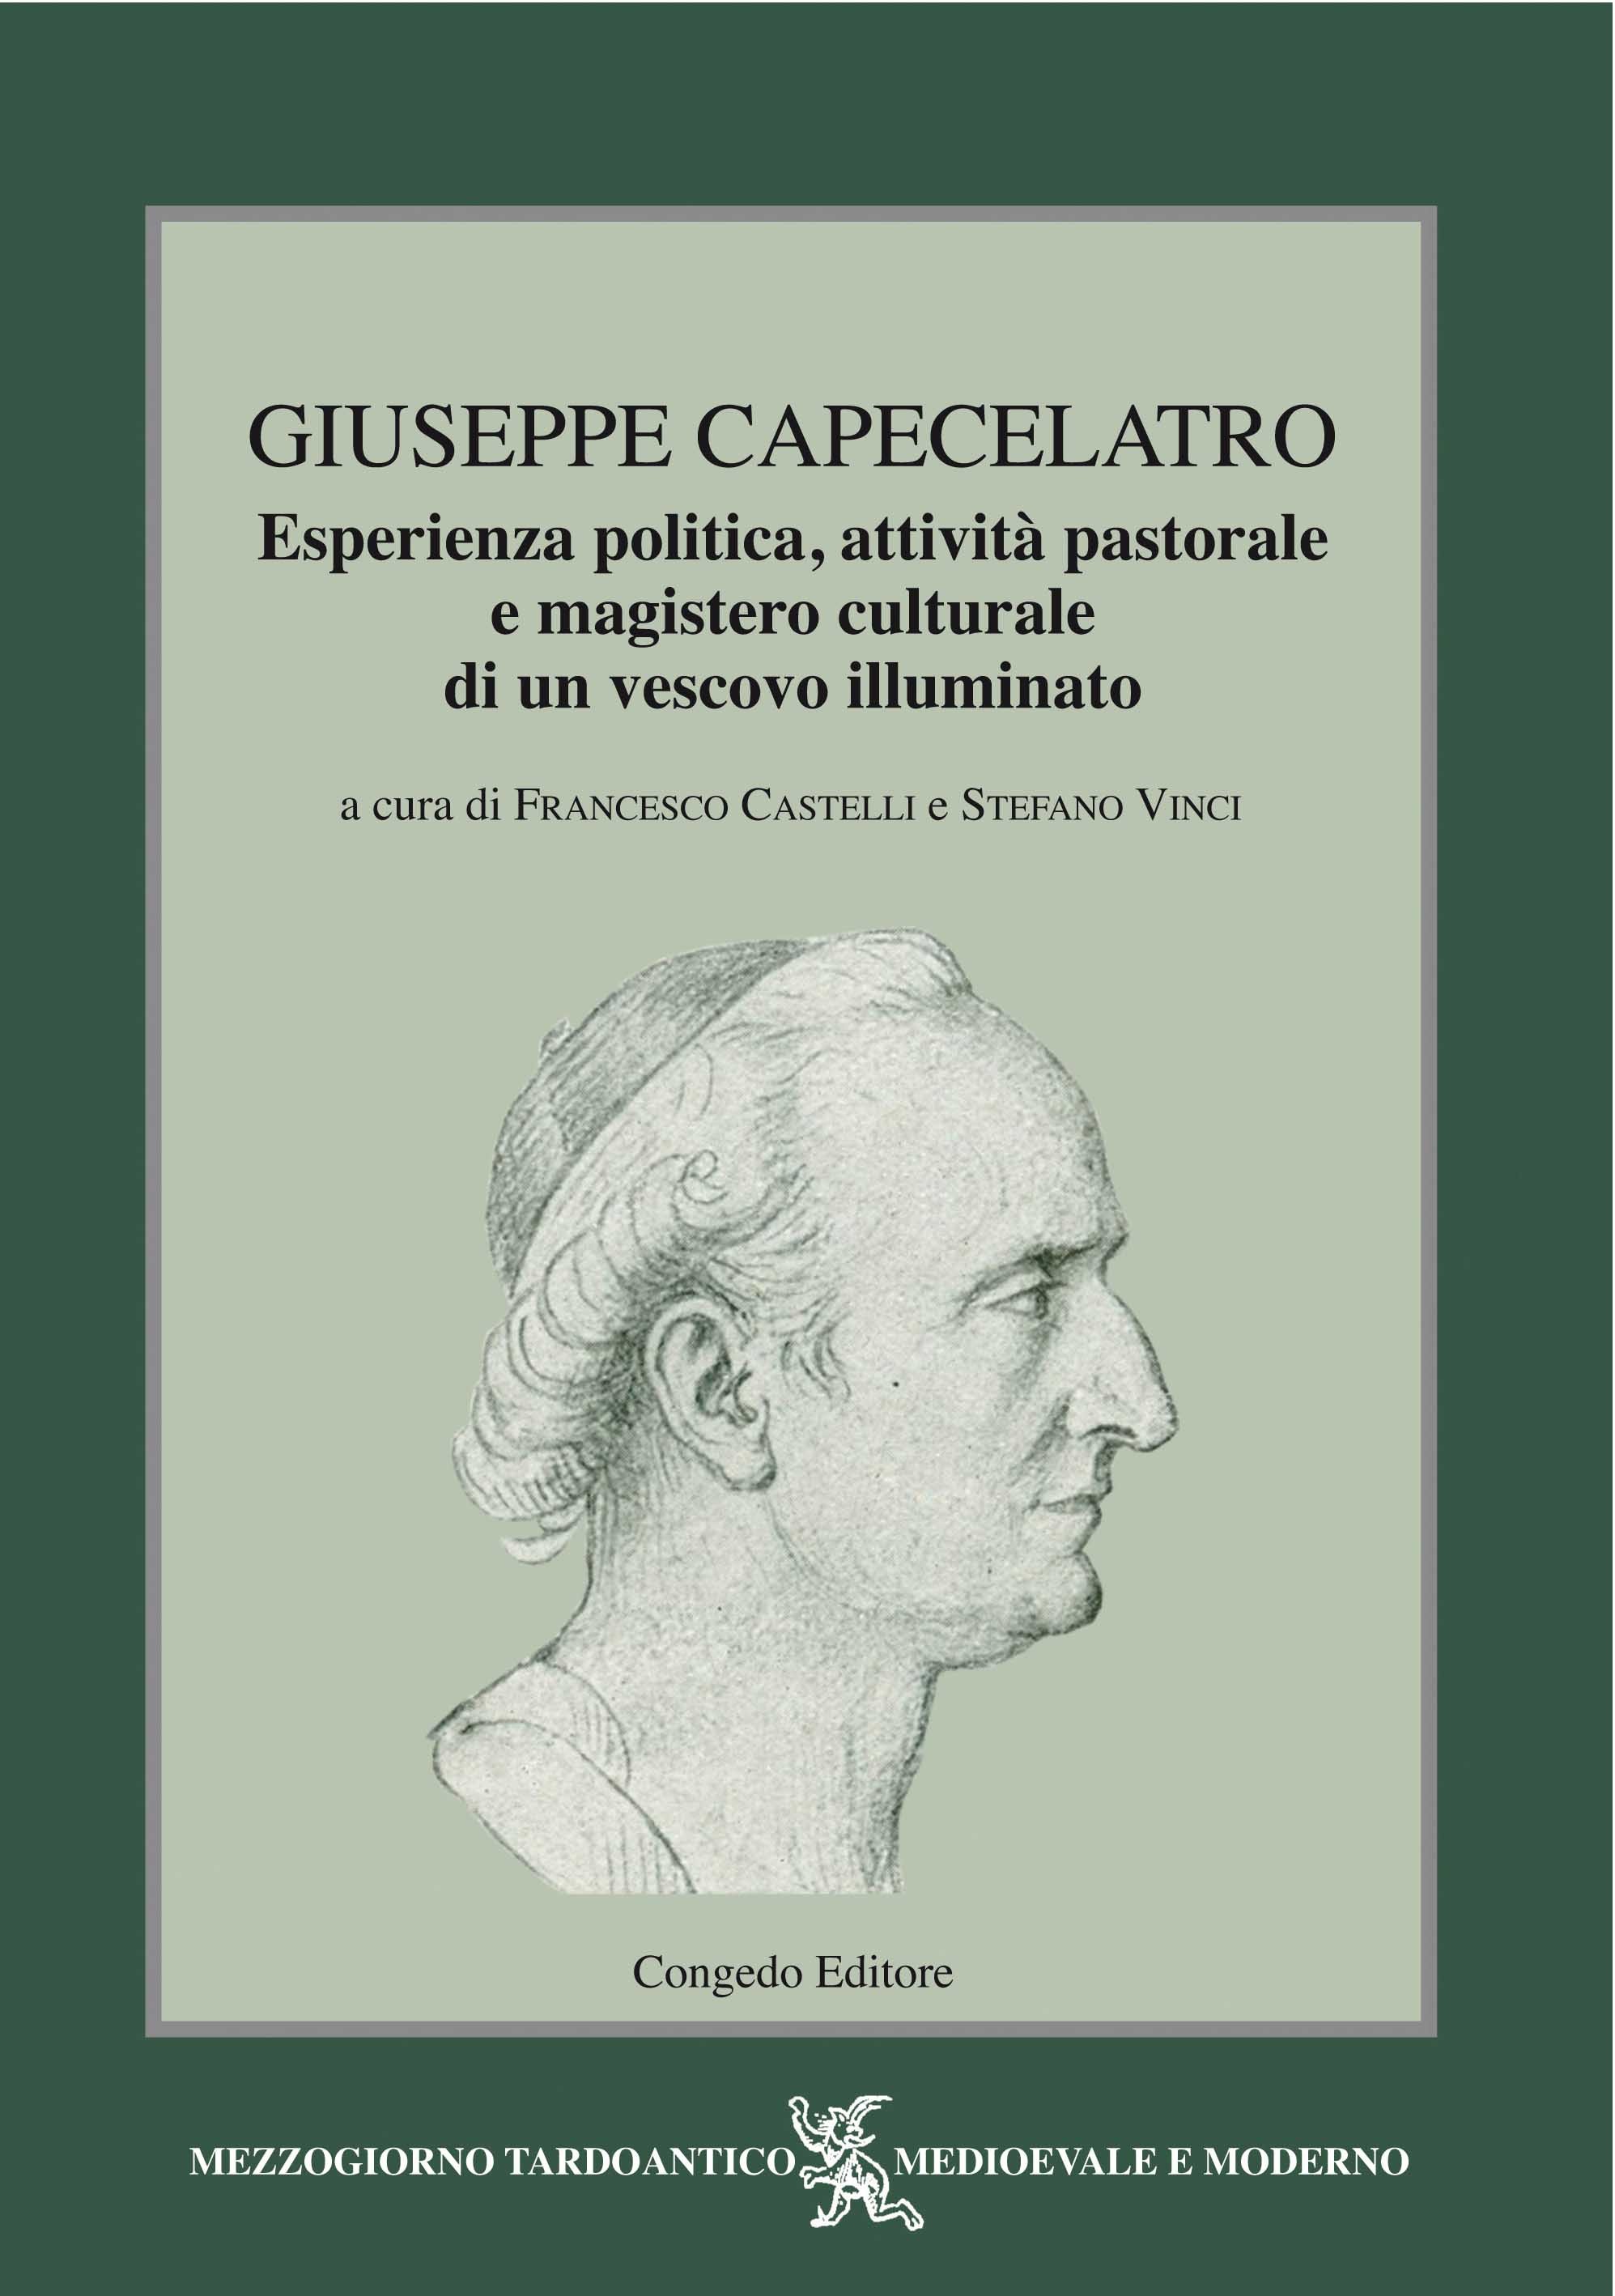 Giuseppe Capecelatro. Esperienza politica, attività pastorale e magistero culturale di un vescovo illuminato